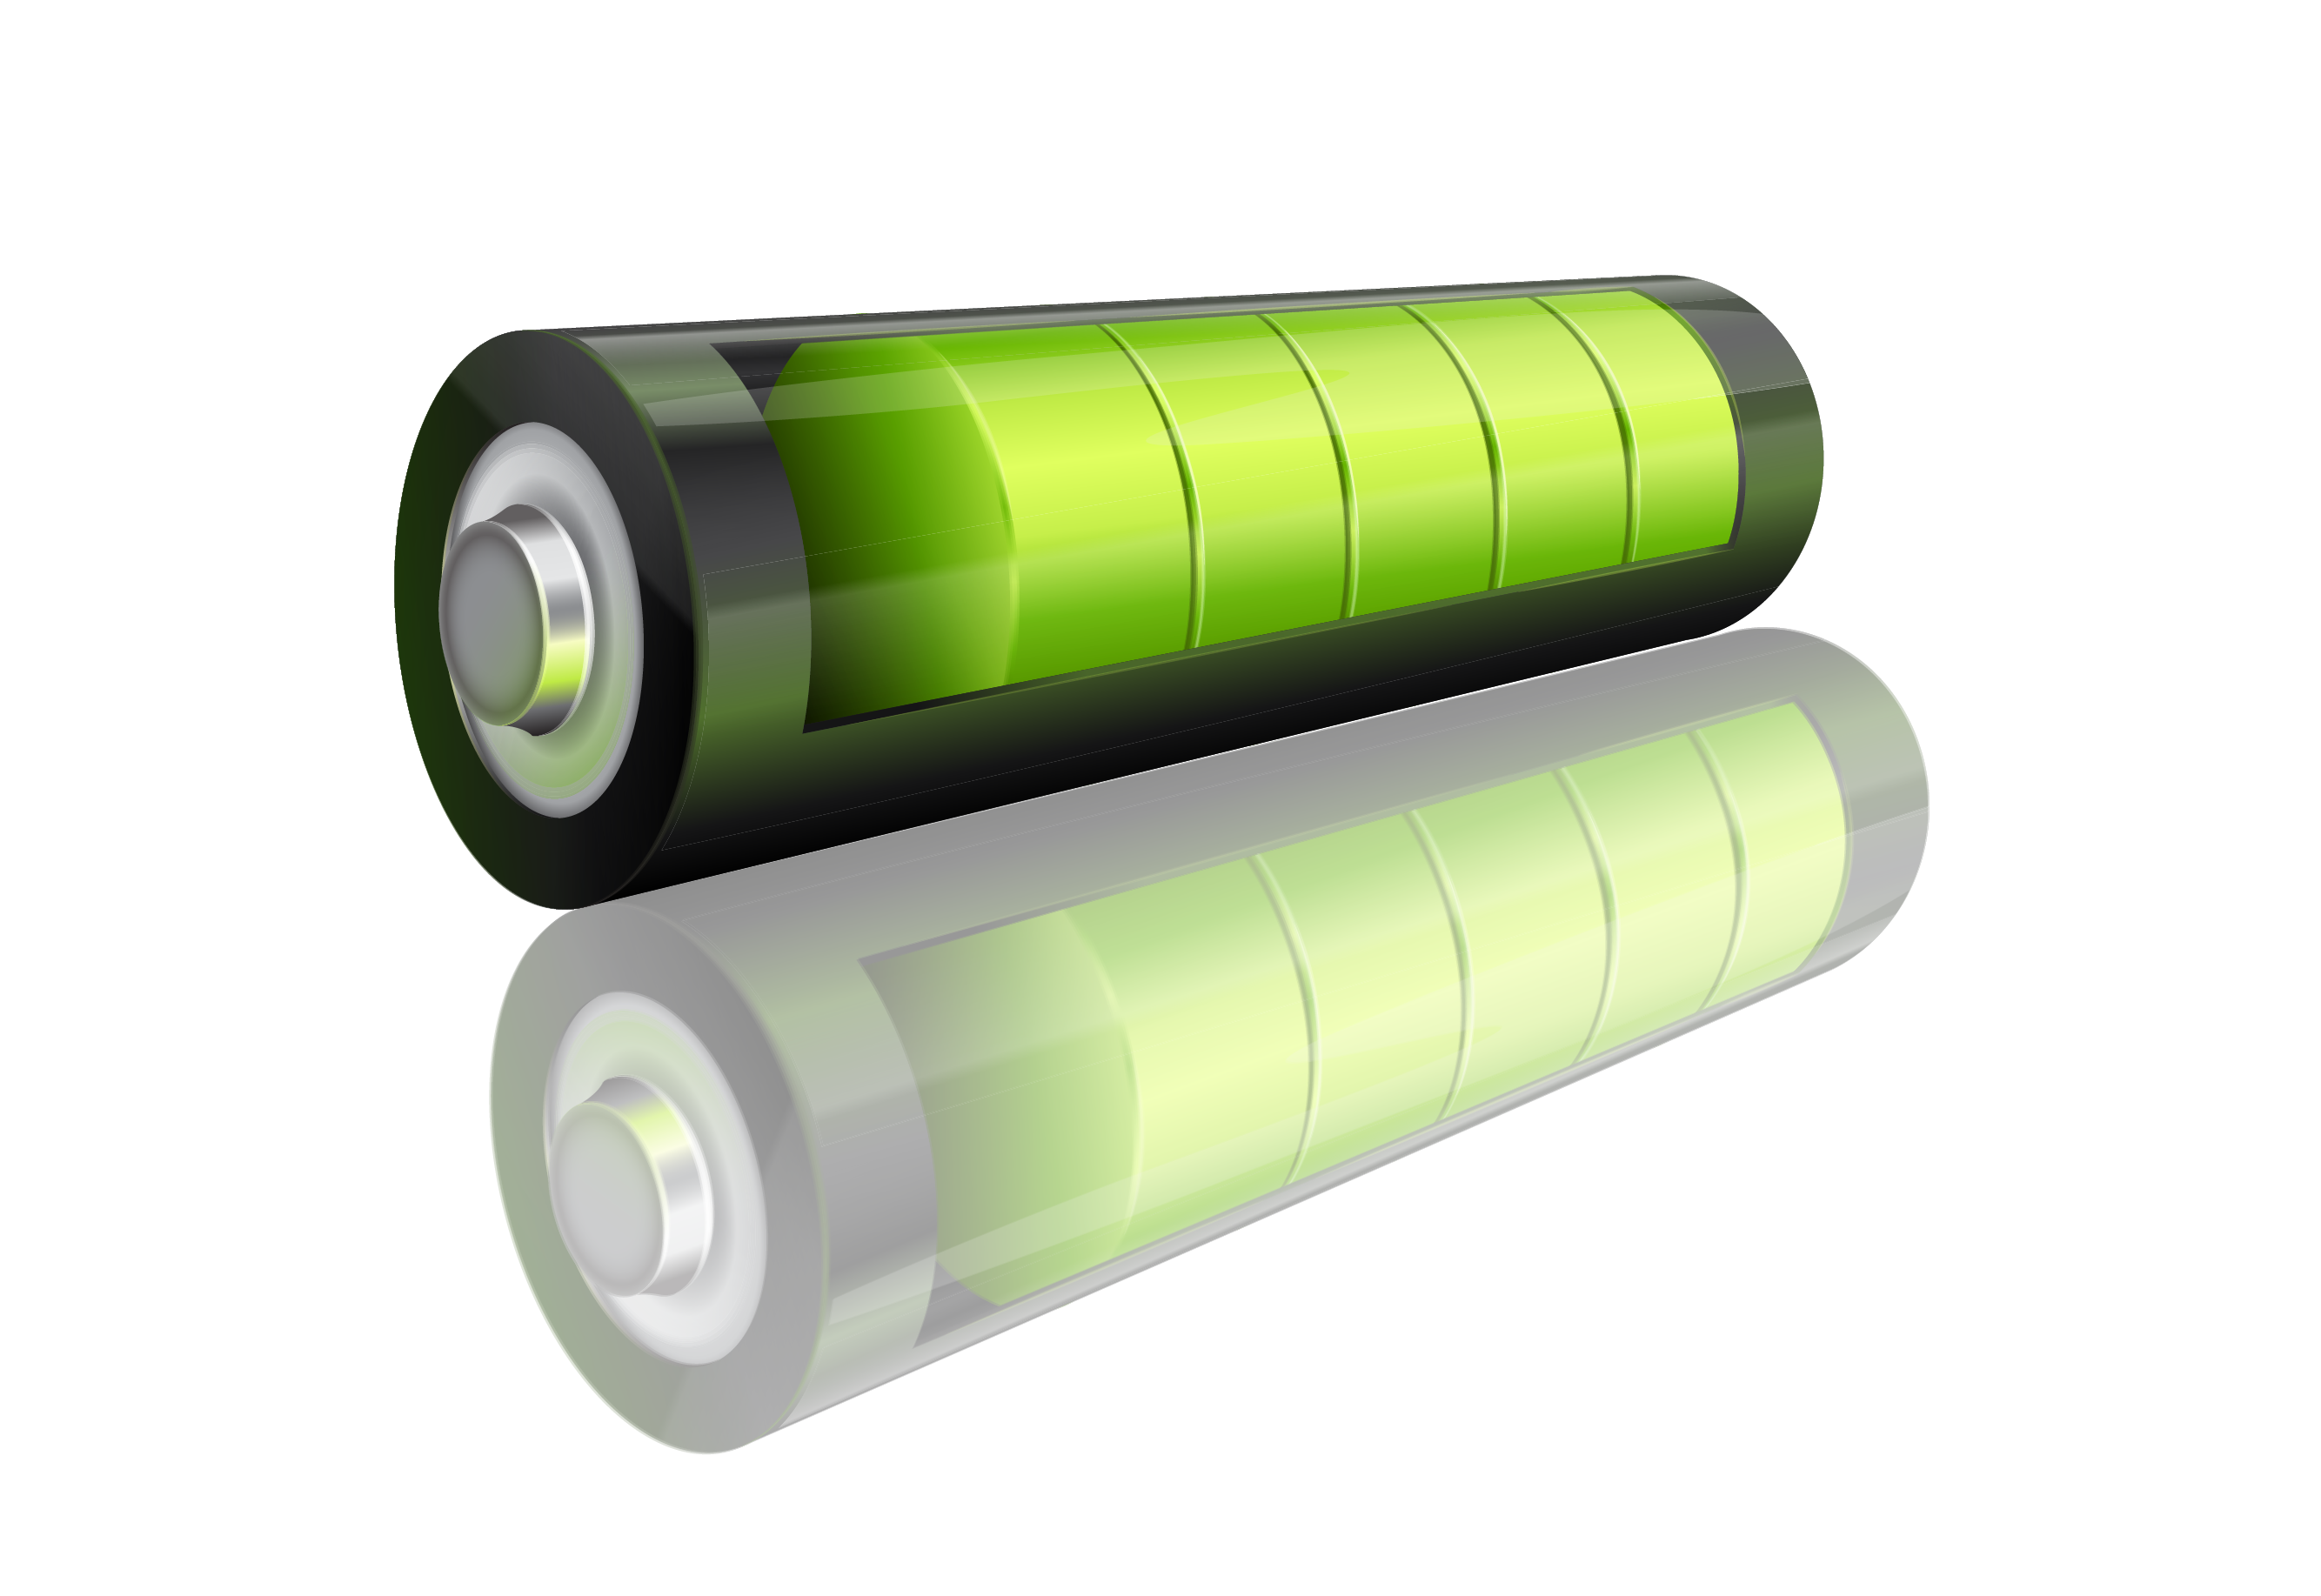 VX300會議機電池容量示意圖